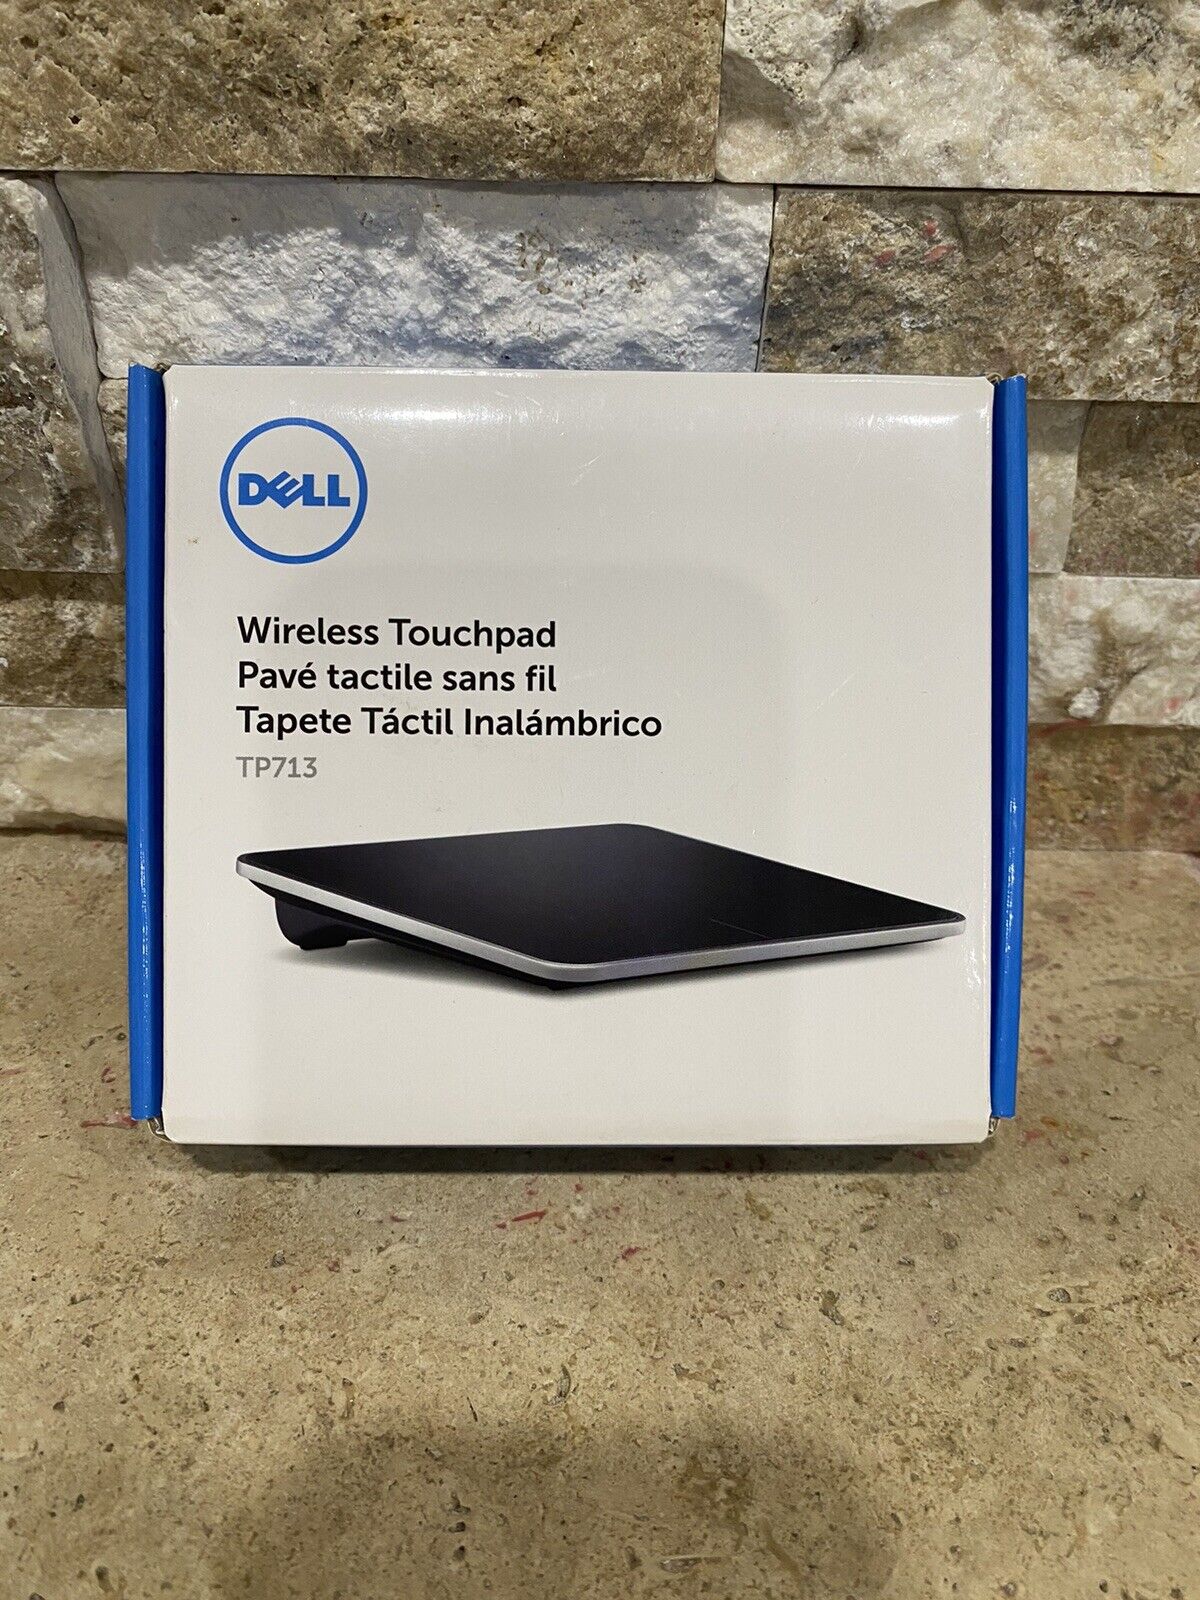 Dell Wireless Touchpad TP713 - New Open Box- No Batteries - READ Description